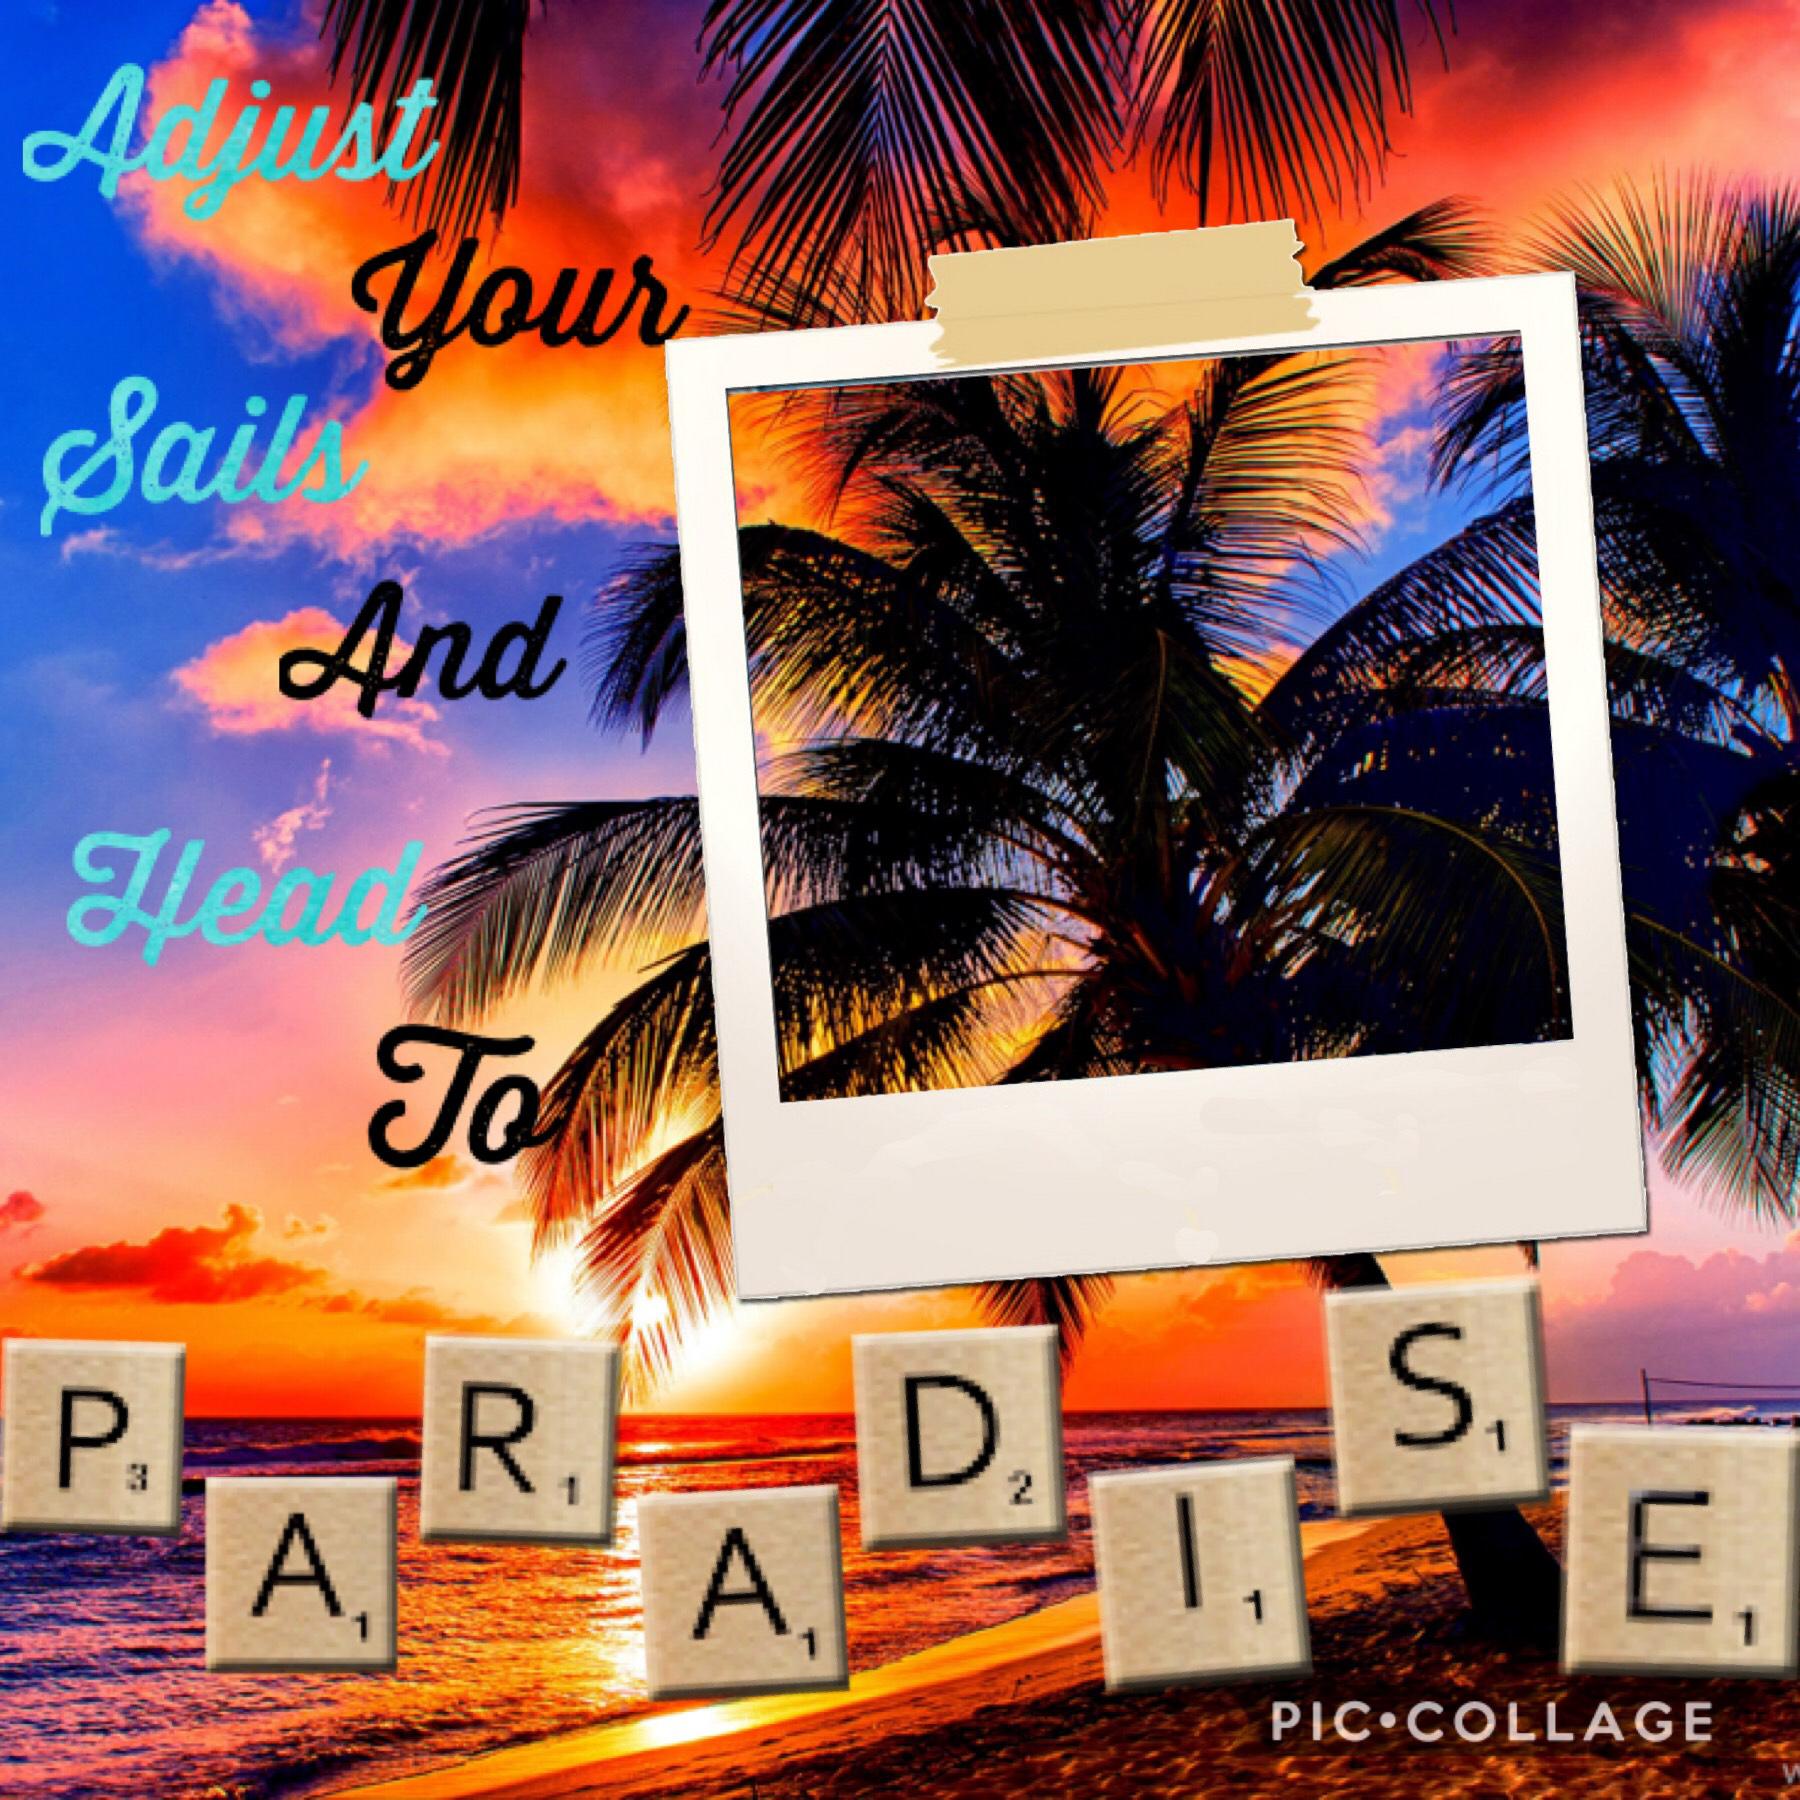 Set you sail to Paradise 🏝